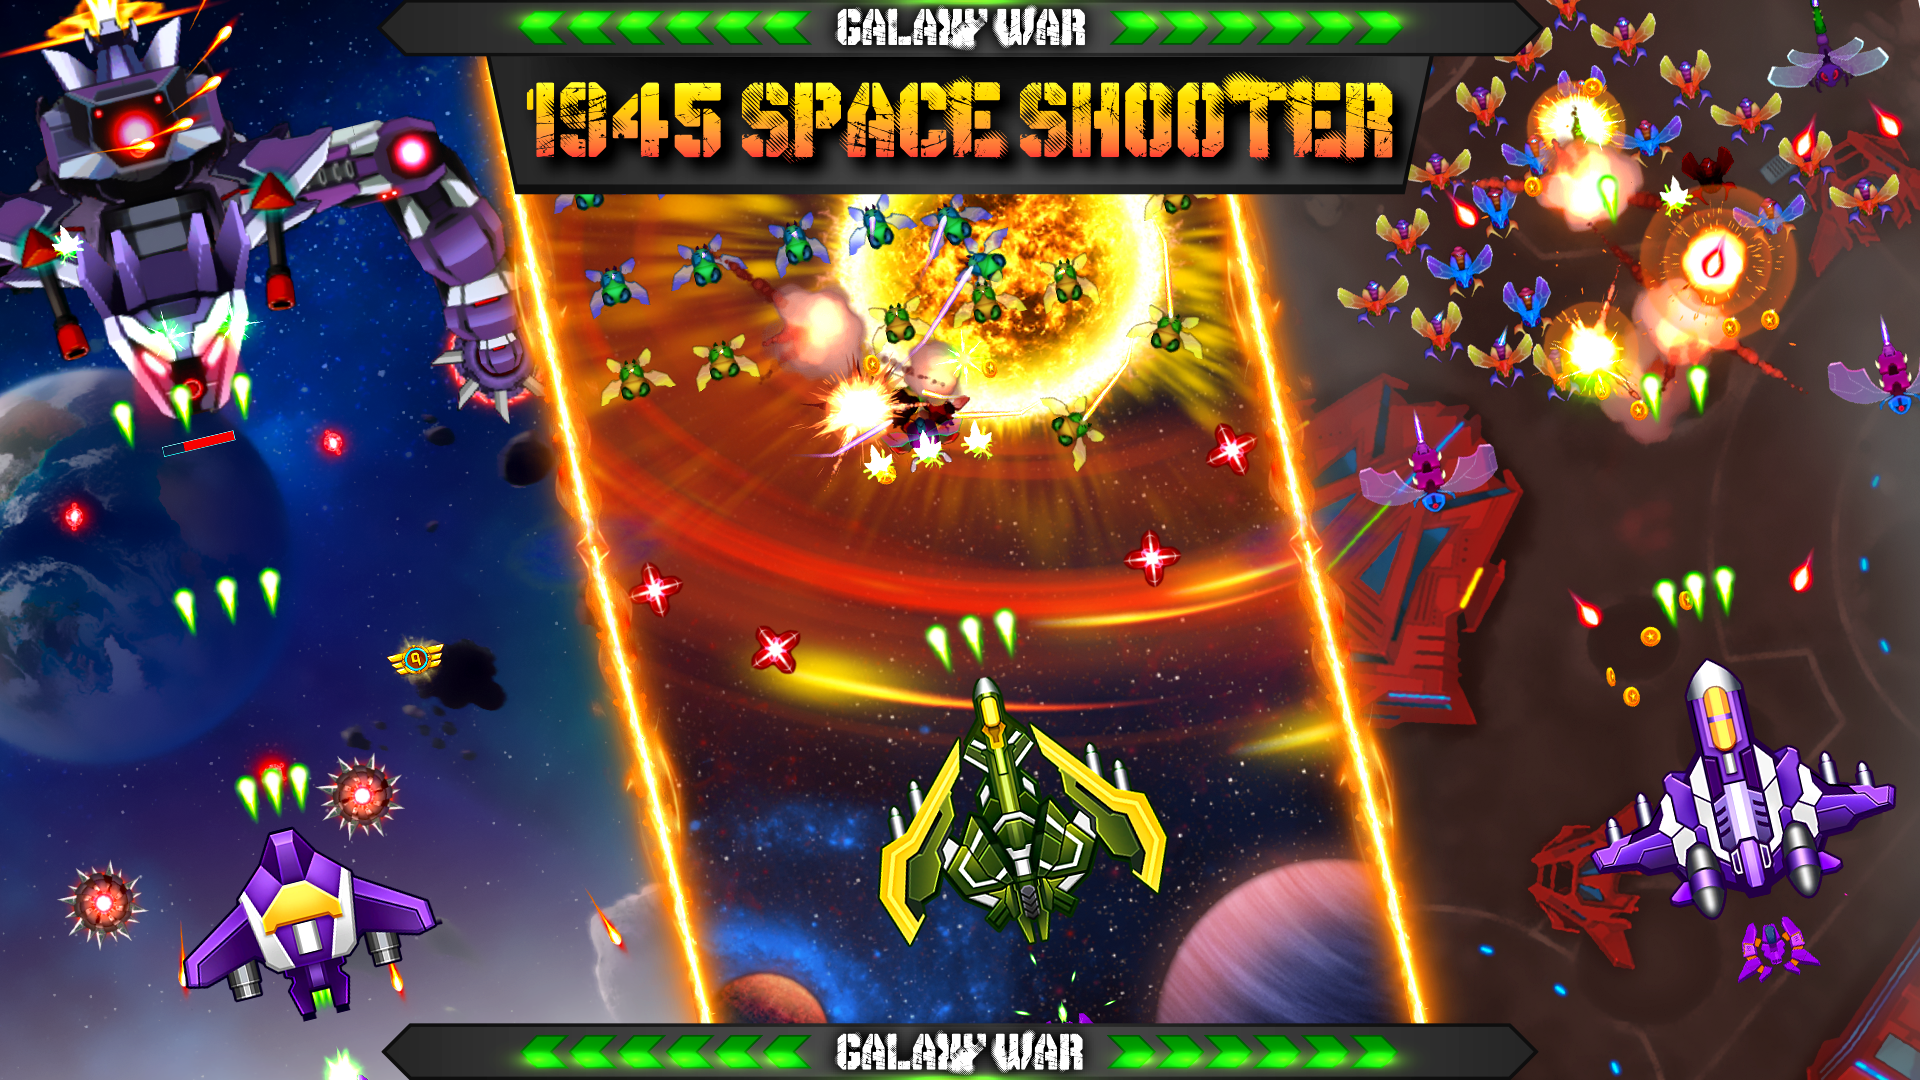 Galaxy War 1945 Space Shooter 게임 스크린 샷